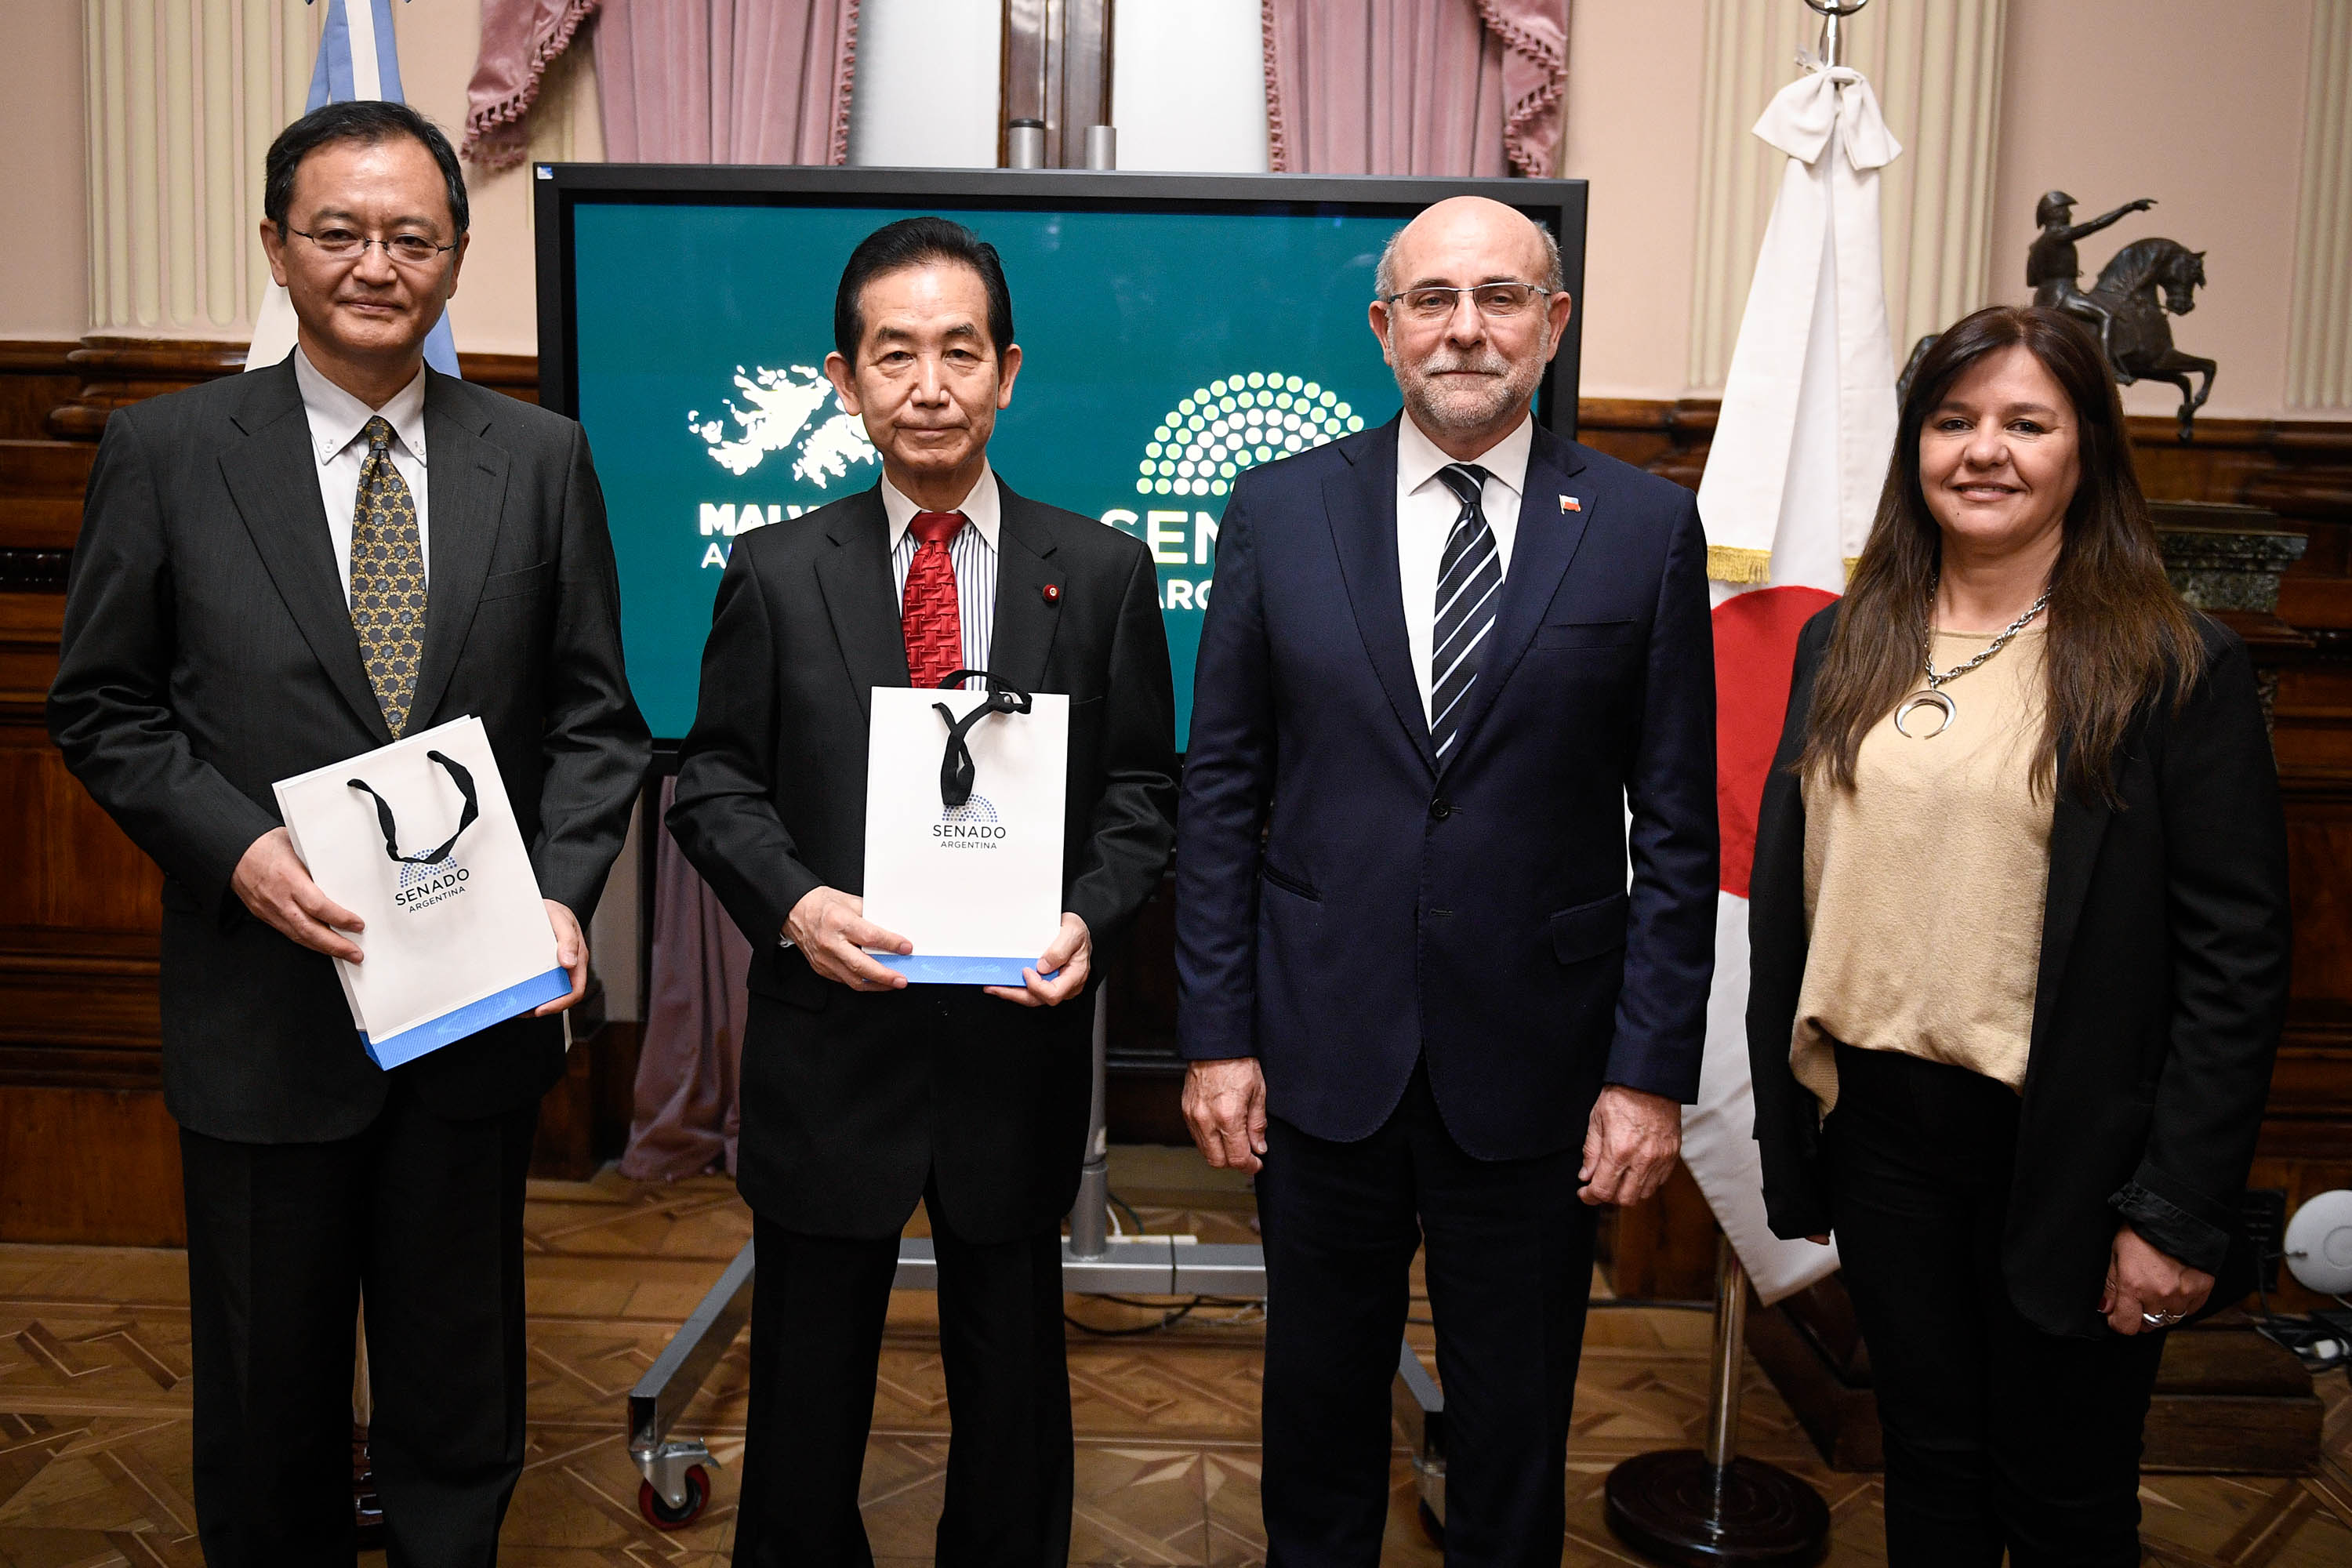 H.S.N. Evento. Embajador de Japón en la Argentina, Sr. Takahiro NAKAMAE; el Asesor Especial de la Liga Parlamentaria de Amistad, Sr. Kozo YAMAMOTO; el Senador Fama y la Senadora Valenzuela.